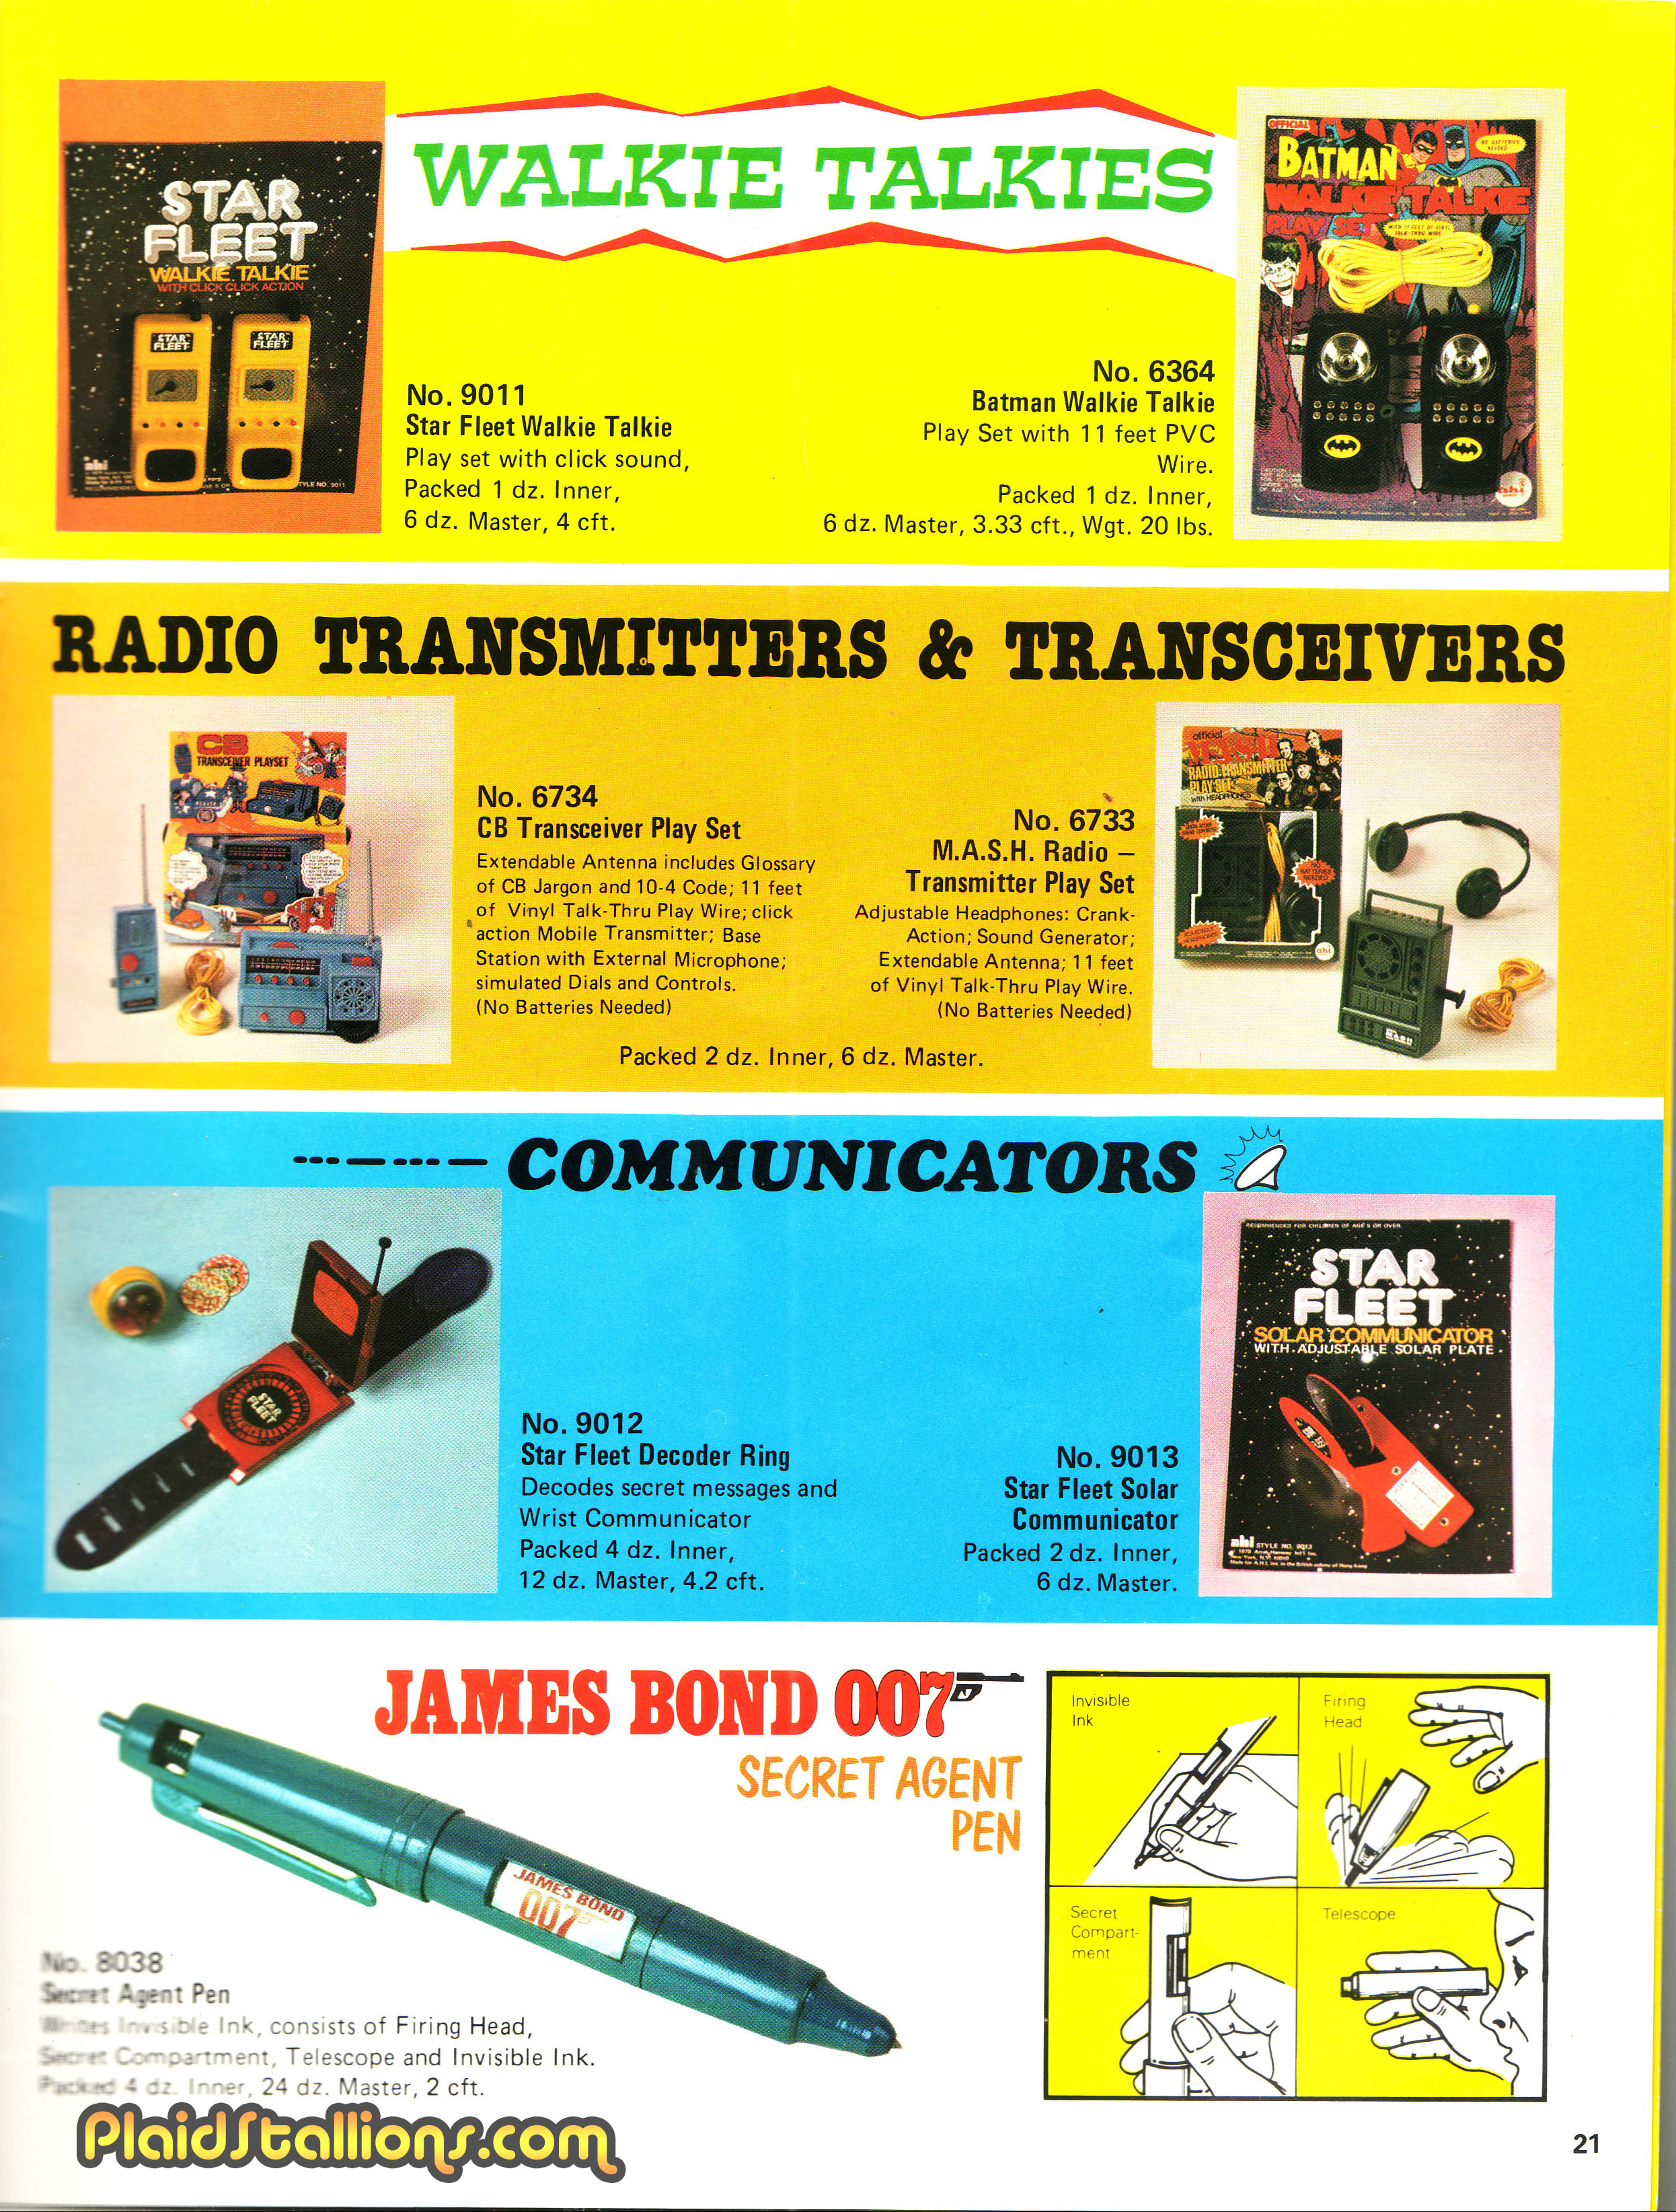 AHI 1978 catalog MASH